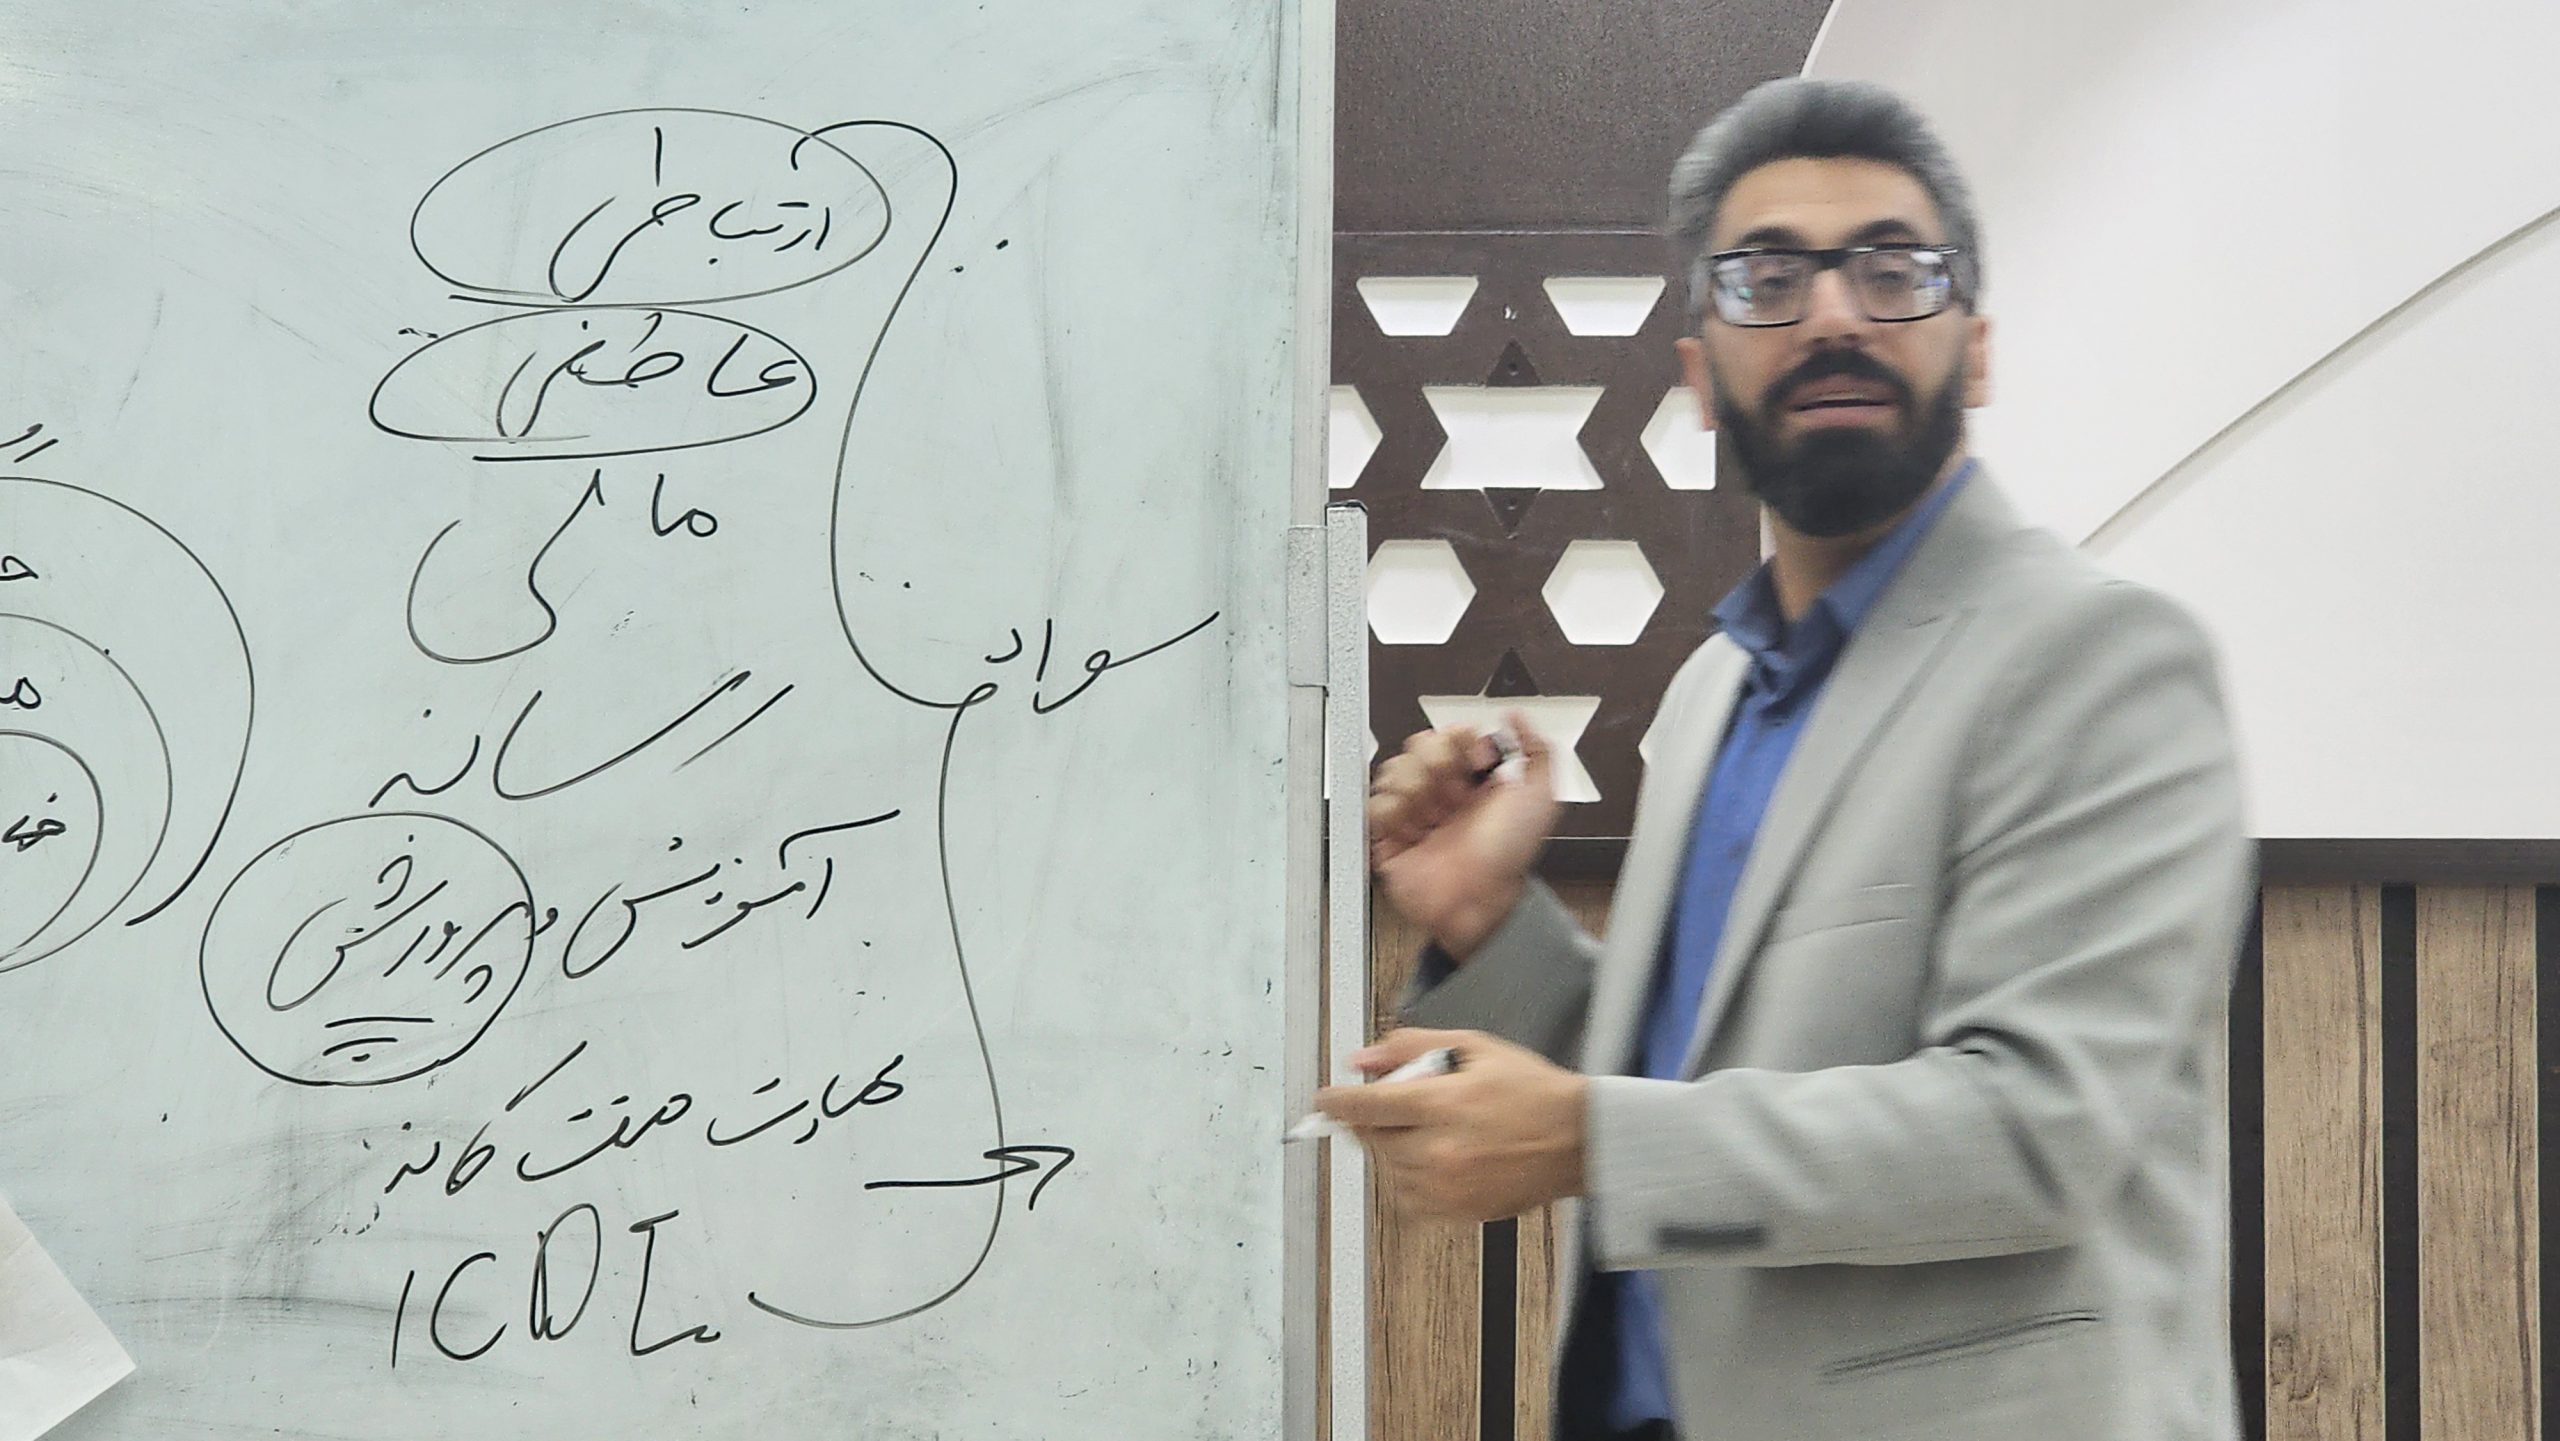 کارگاه سواد رسانه کاری از مرکز اسلامی فارس در اوز: آموزشی مفید، صدایی که به درستی شنیده نشد